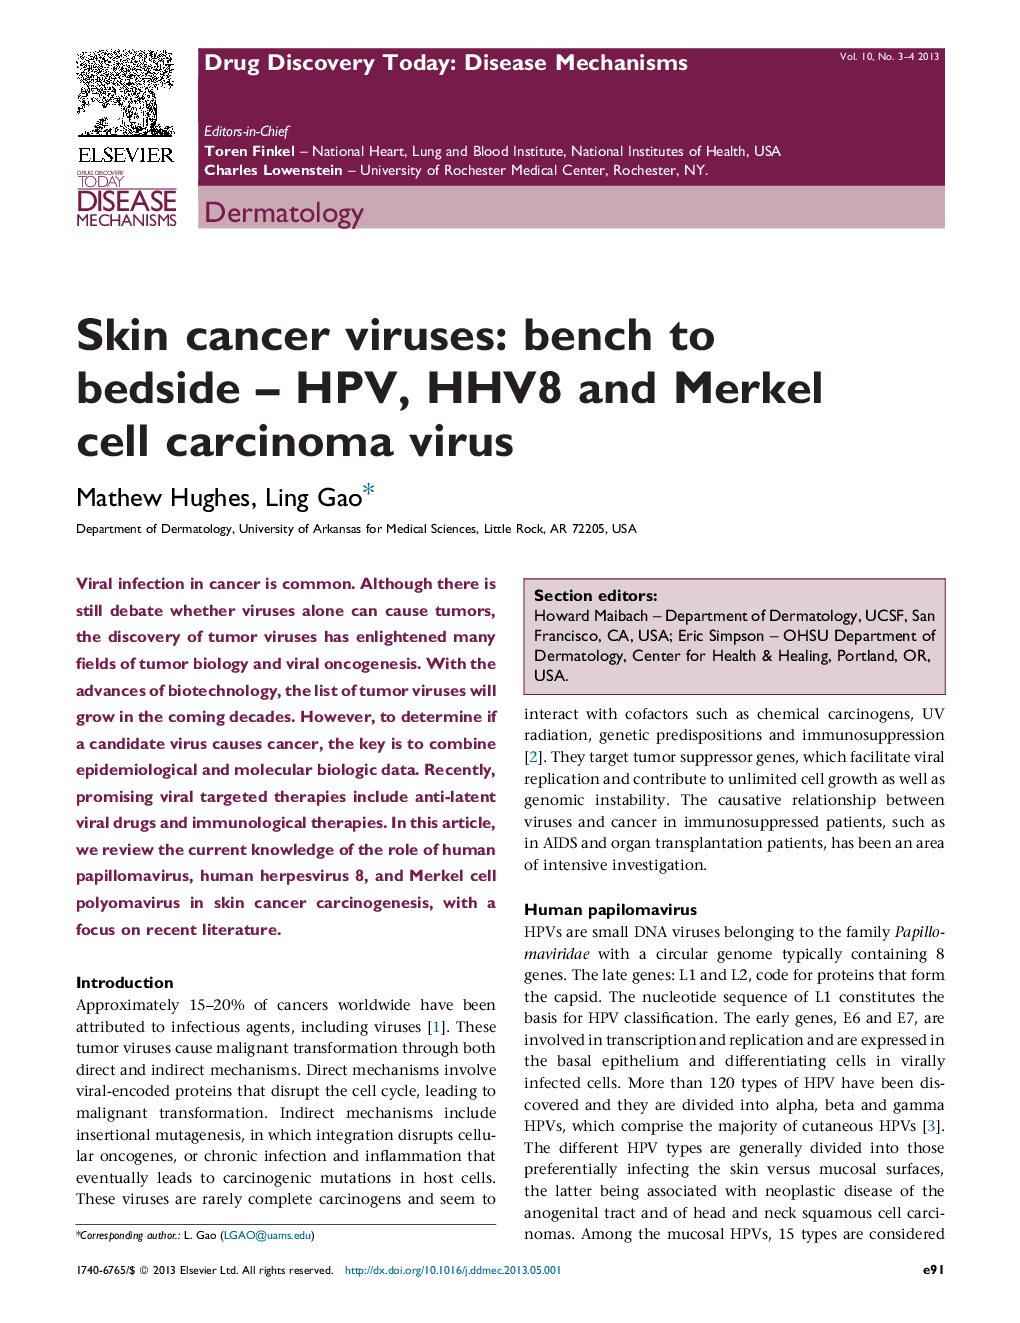 Skin cancer viruses: bench to bedside – HPV, HHV8 and Merkel cell carcinoma virus